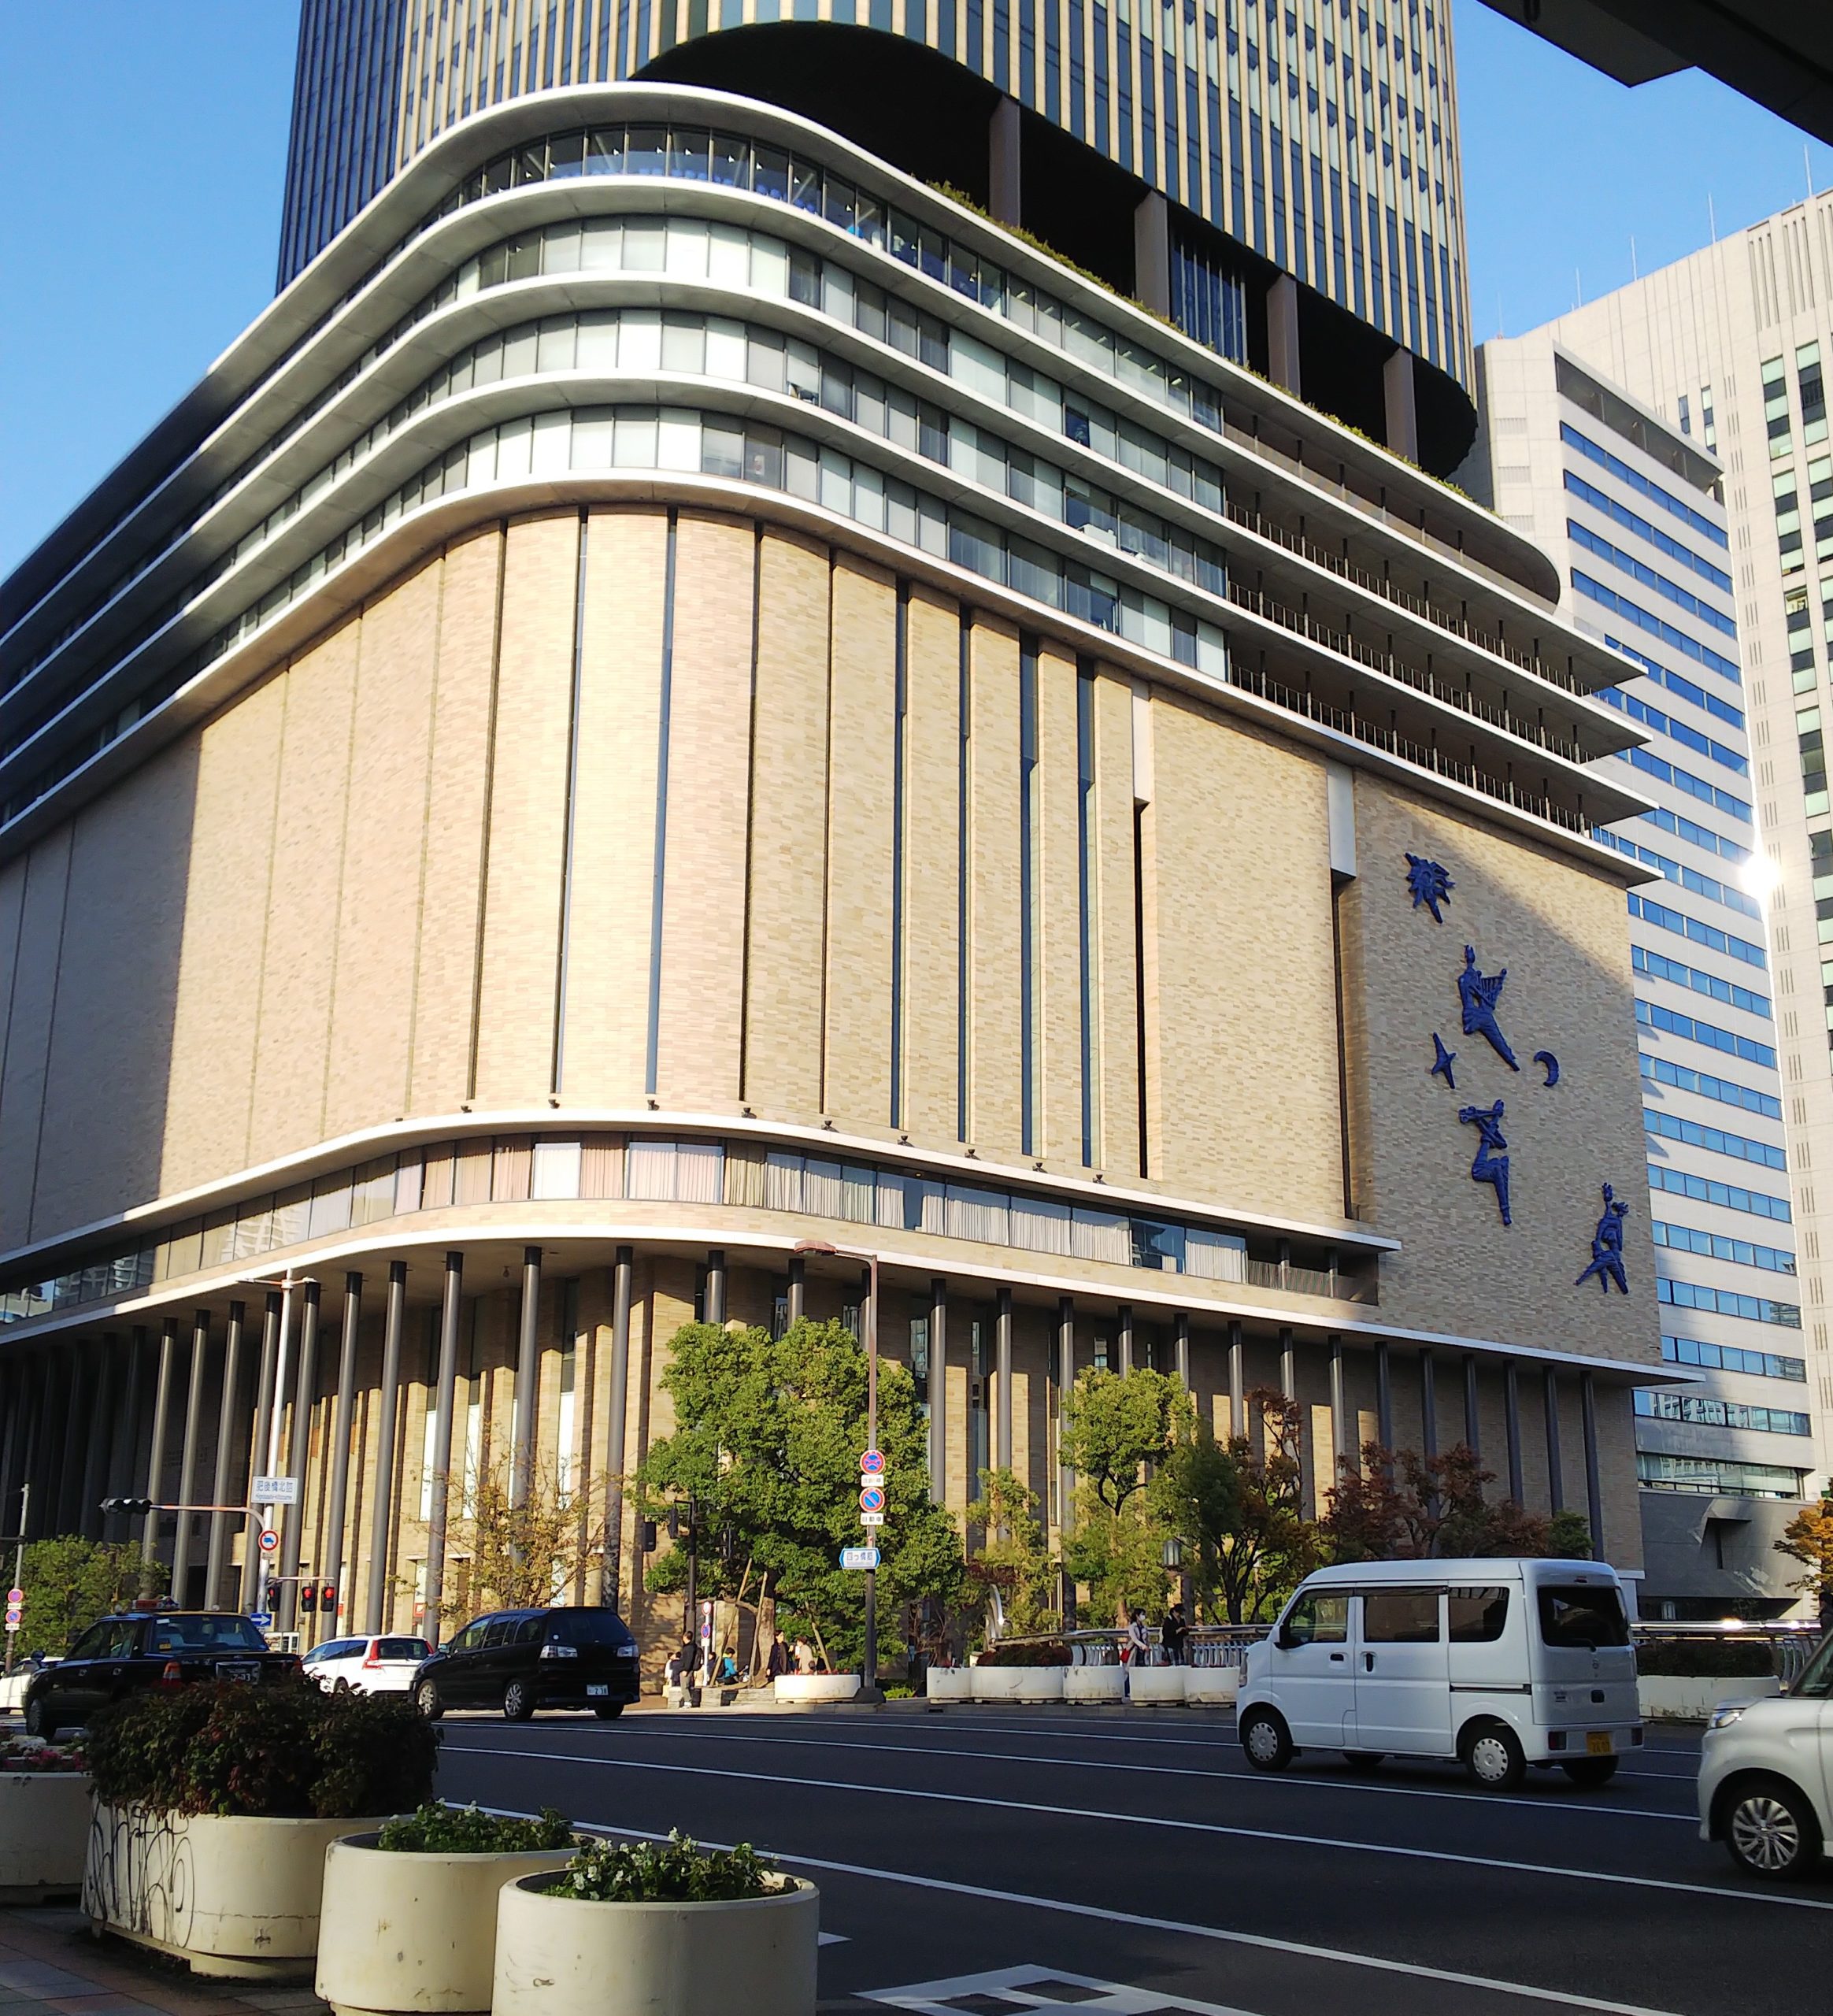 久保田利伸BeautifulPeople大阪フェスティバルホールのセトリと感想12月6日